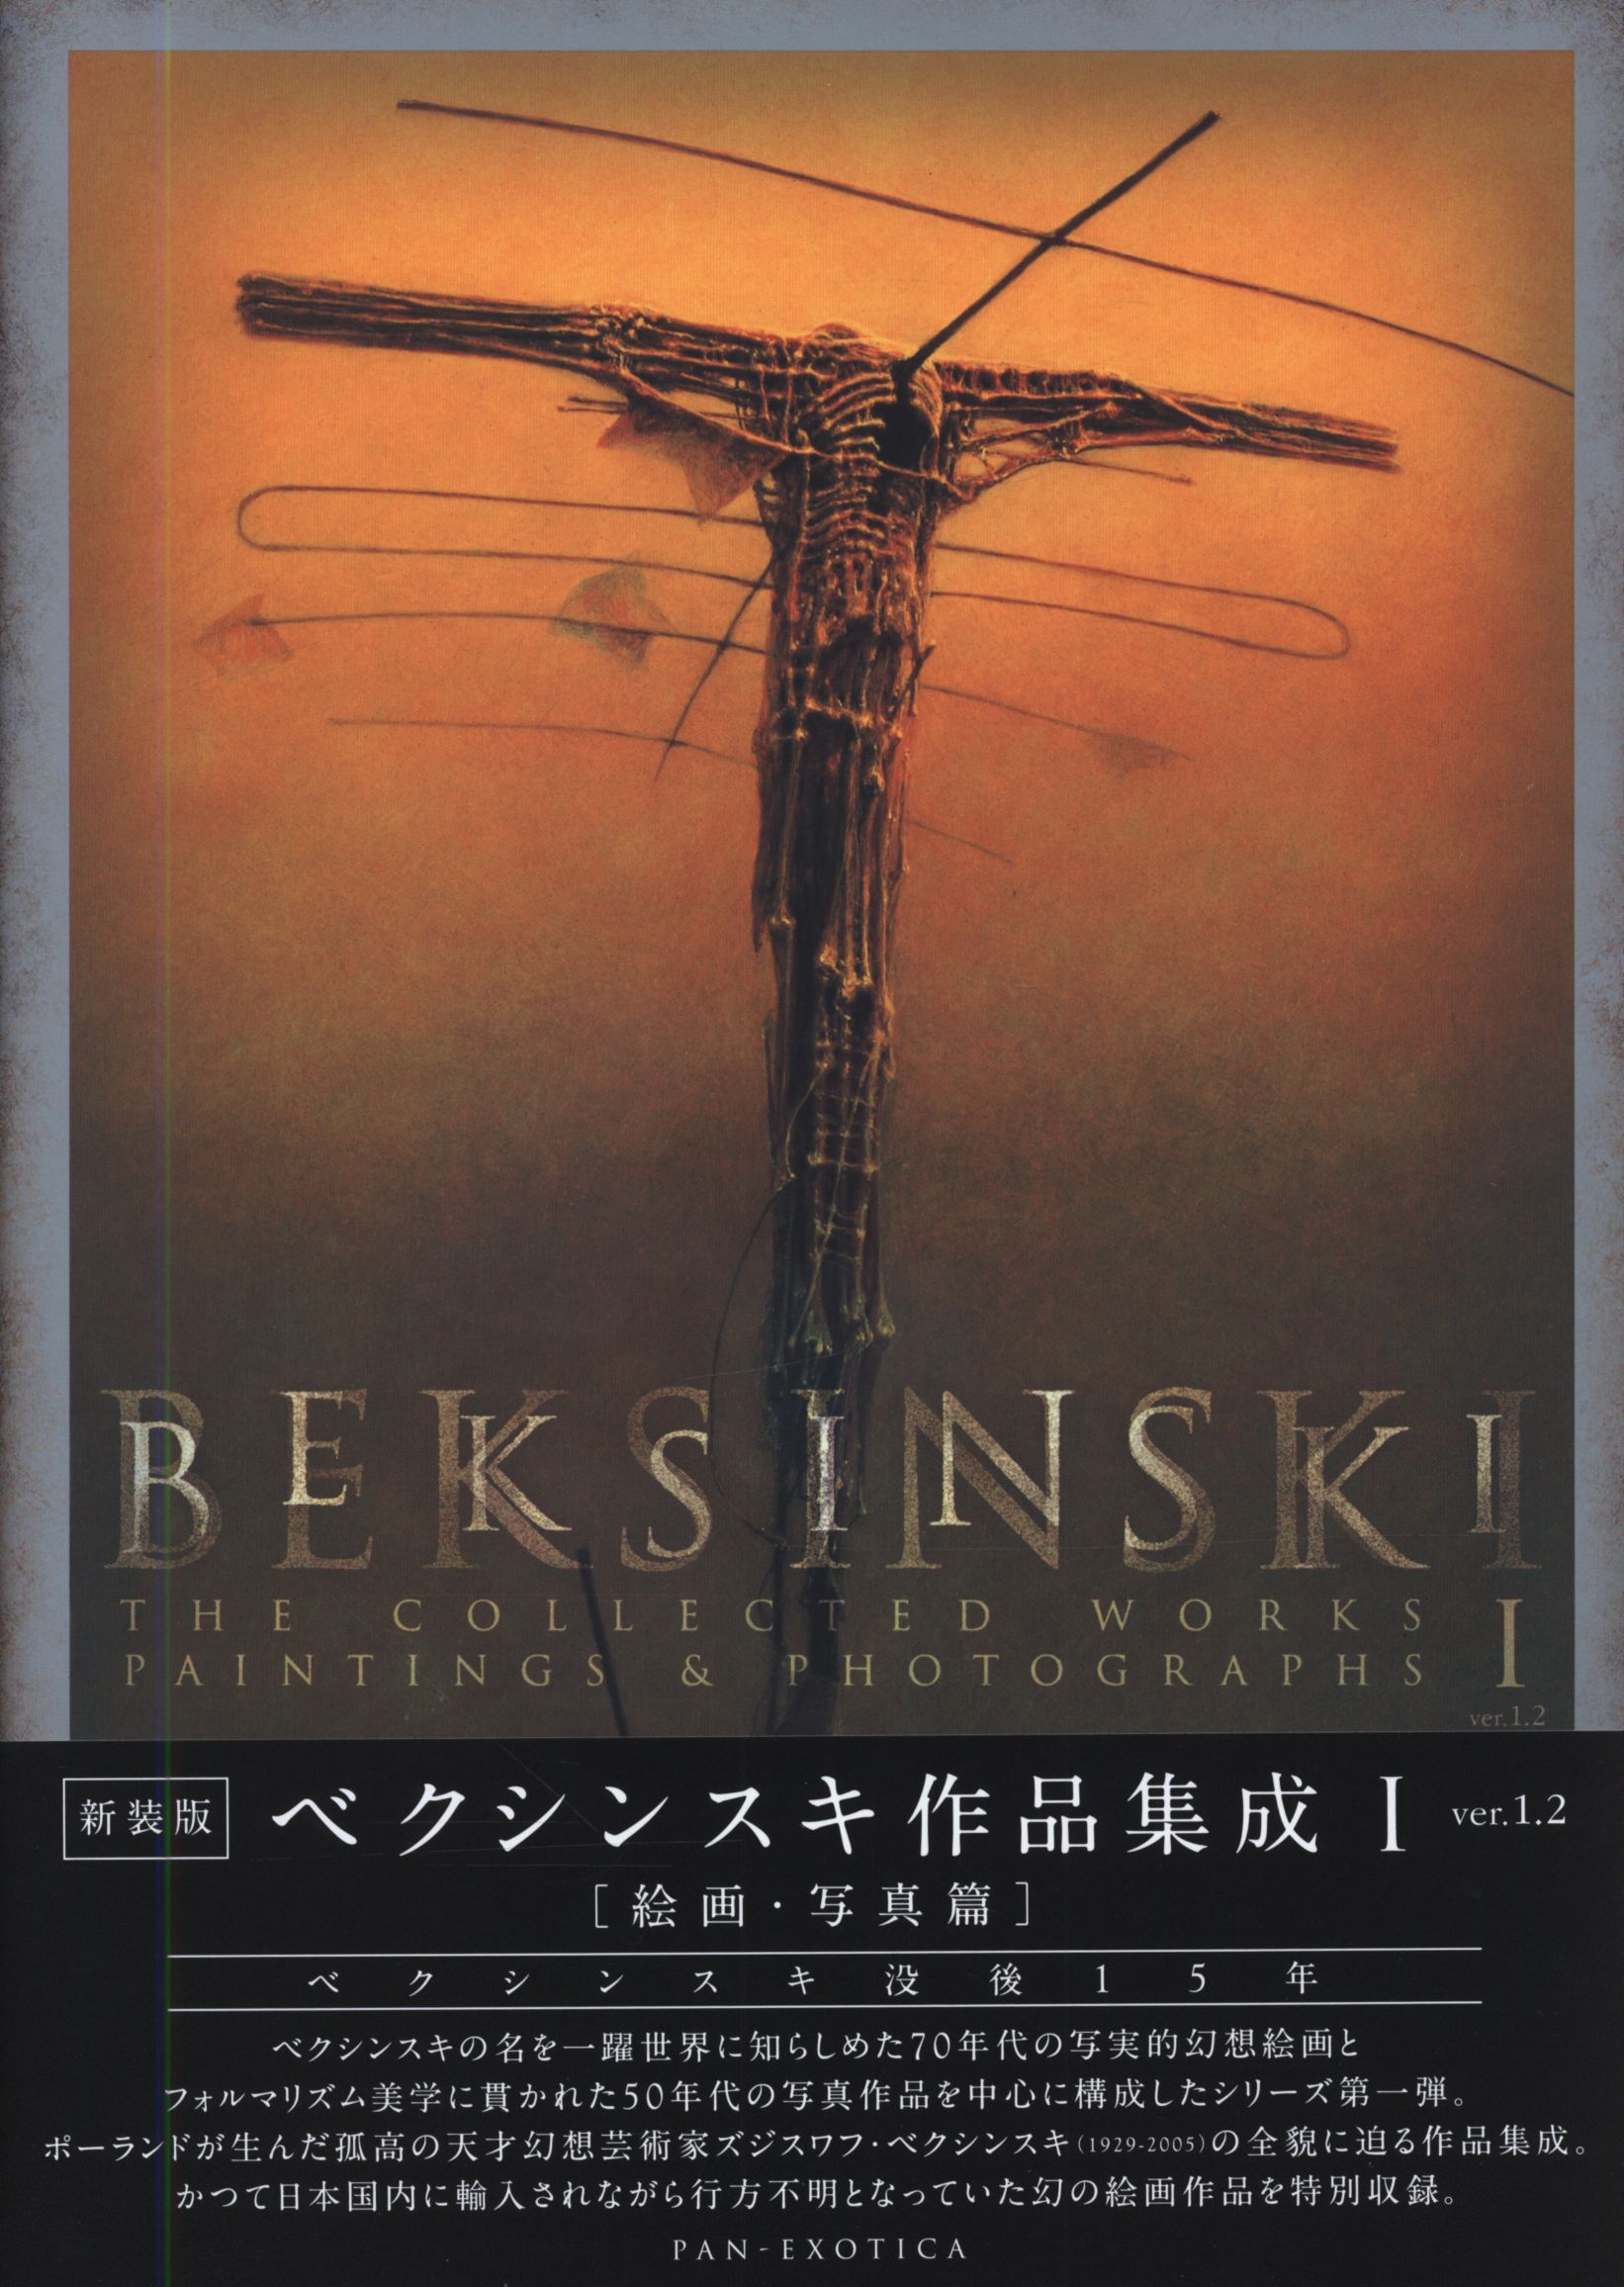 ★帯付き新装版 BEKSINSKI 作品集成1-3 ver1.2 ベクシンスキー